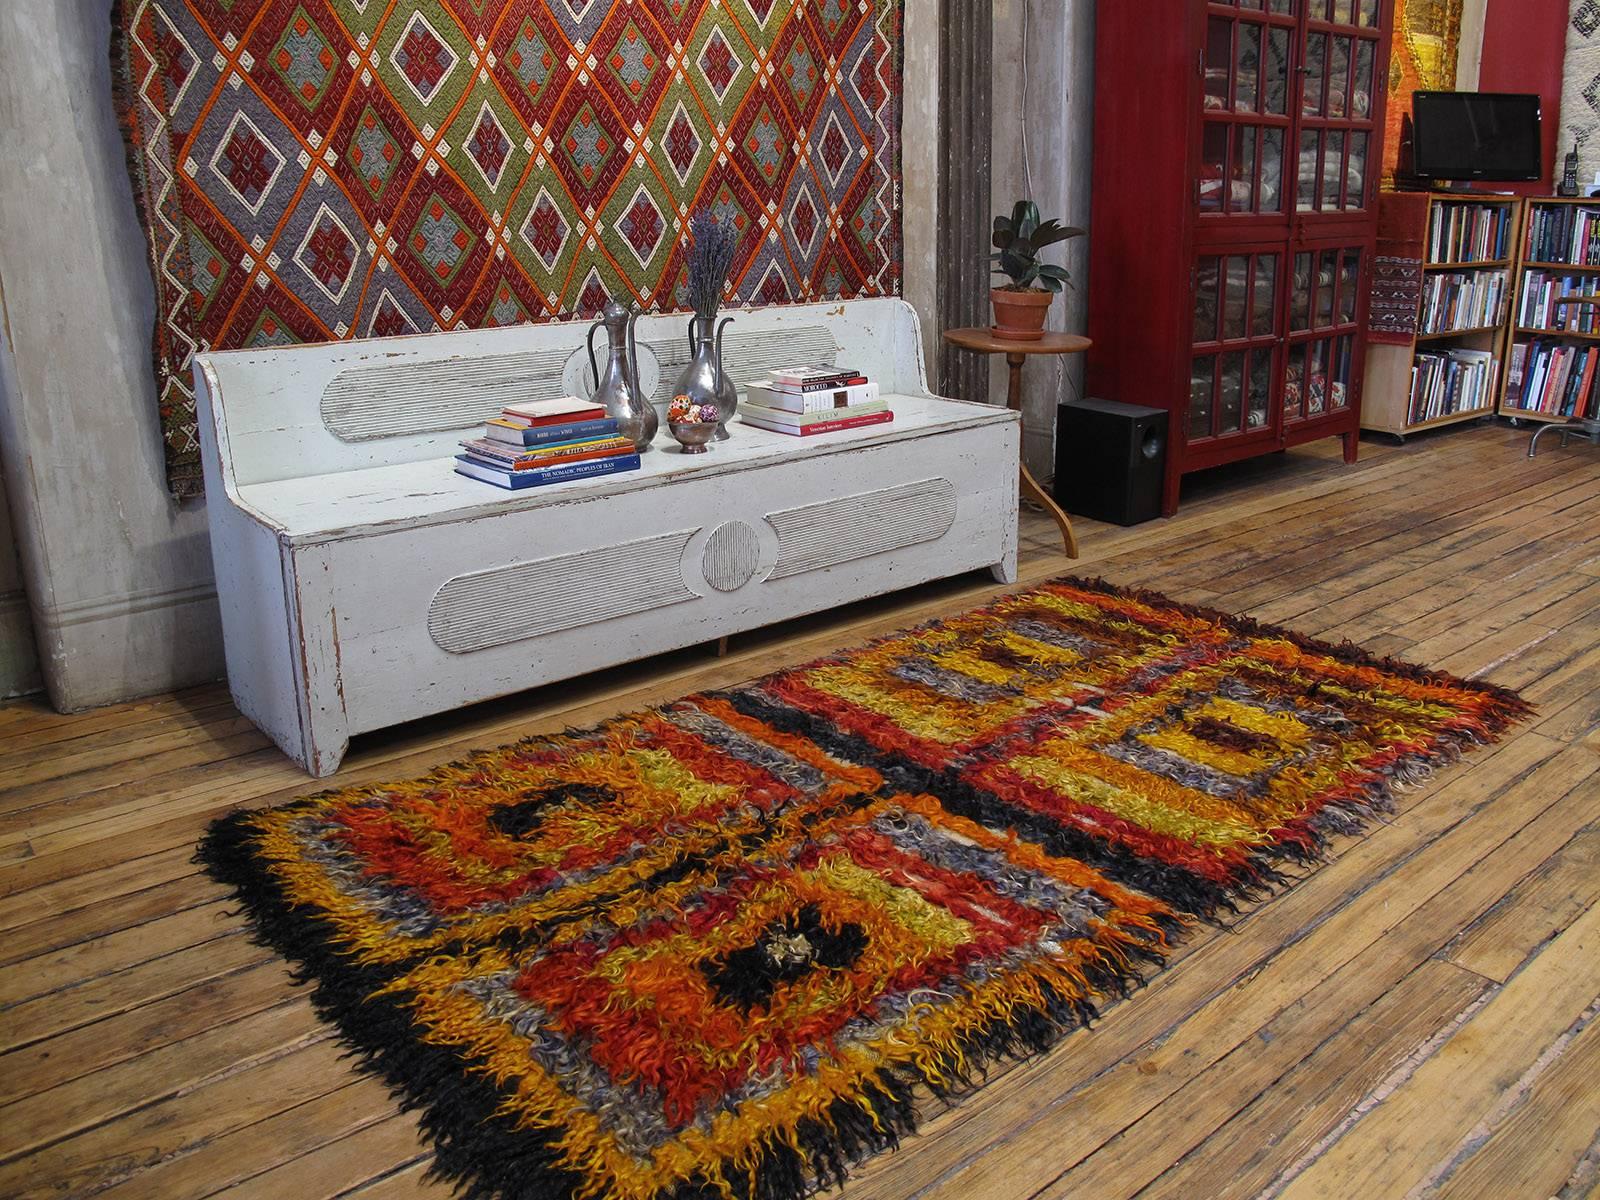 Four Squares, tapis Angora Tulu. Ancien tapis tribal du centre-ouest de la Turquie, grossièrement tissé avec de longues mèches de poils de chèvre angora (mohair) colorés. Ces tapis étaient utilisés comme lits, couvertures et revêtements muraux pour